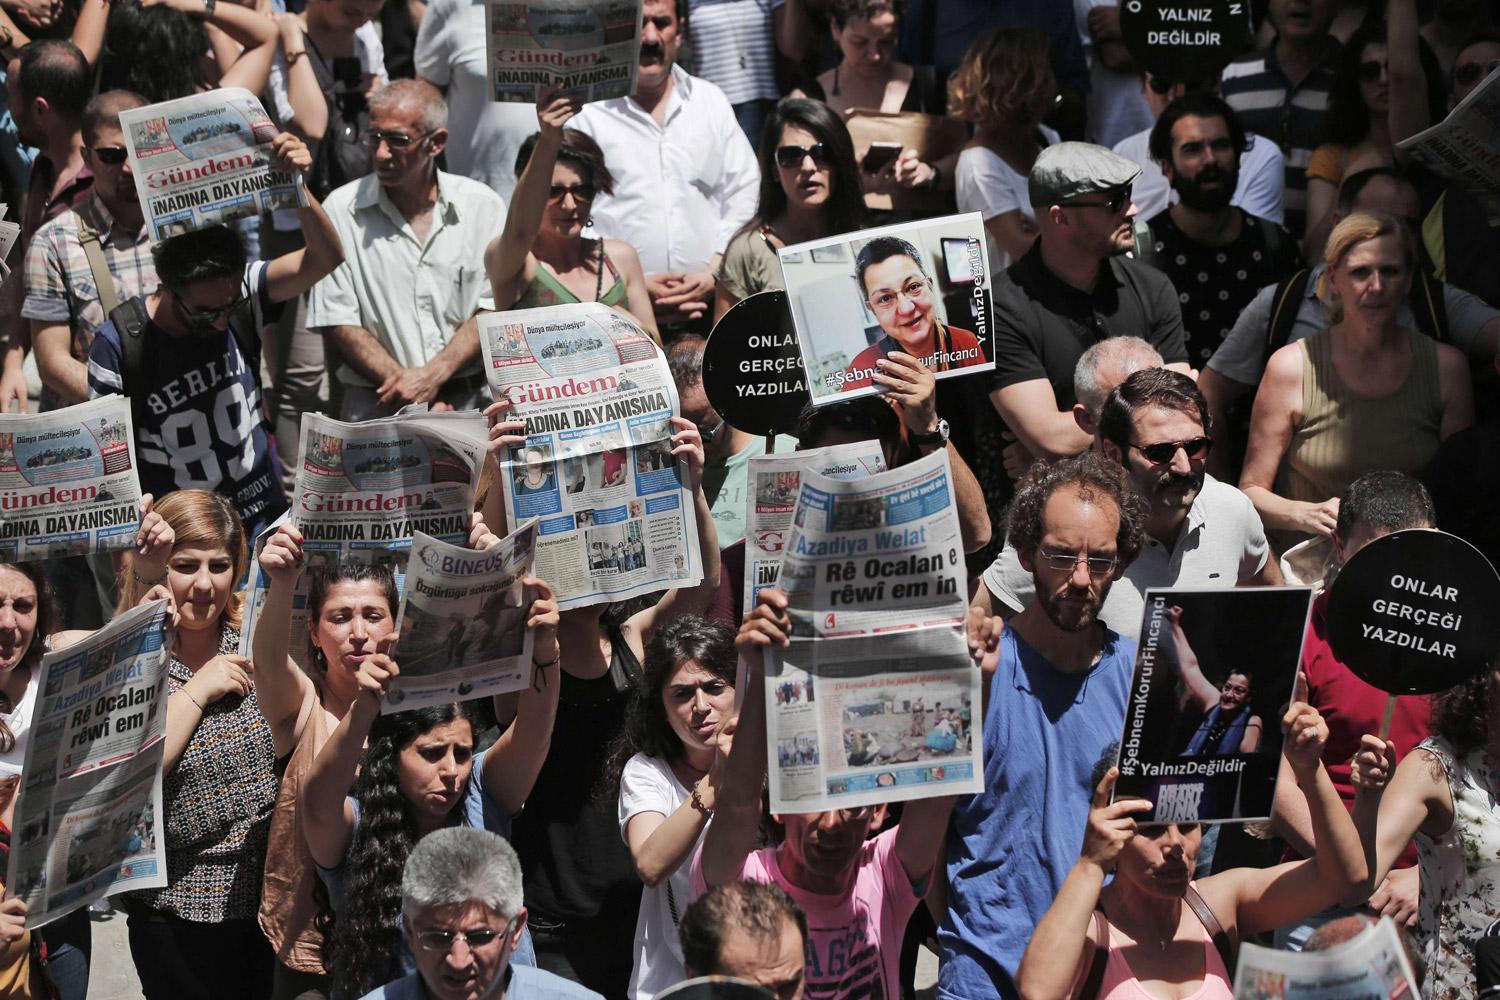 السلطات التركية أغلقت صحيفة "أوزغور غوندم" بتهمة الترويج لحزب العمال الكردستاني